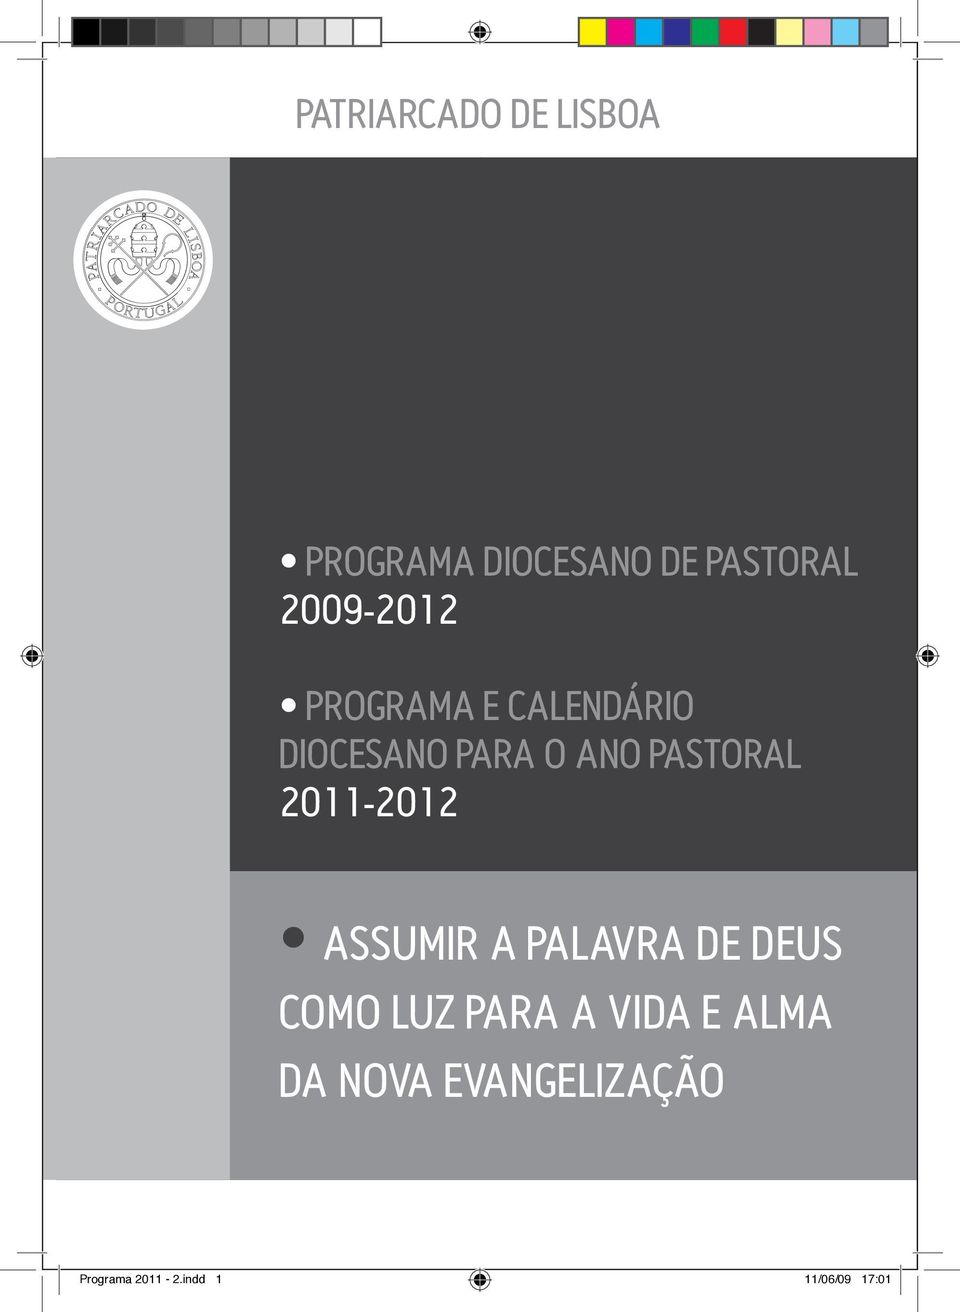 PASTORAL 2011-2012 ASSUMIR A PALAVRA DE DEUS COMO LUZ PARA